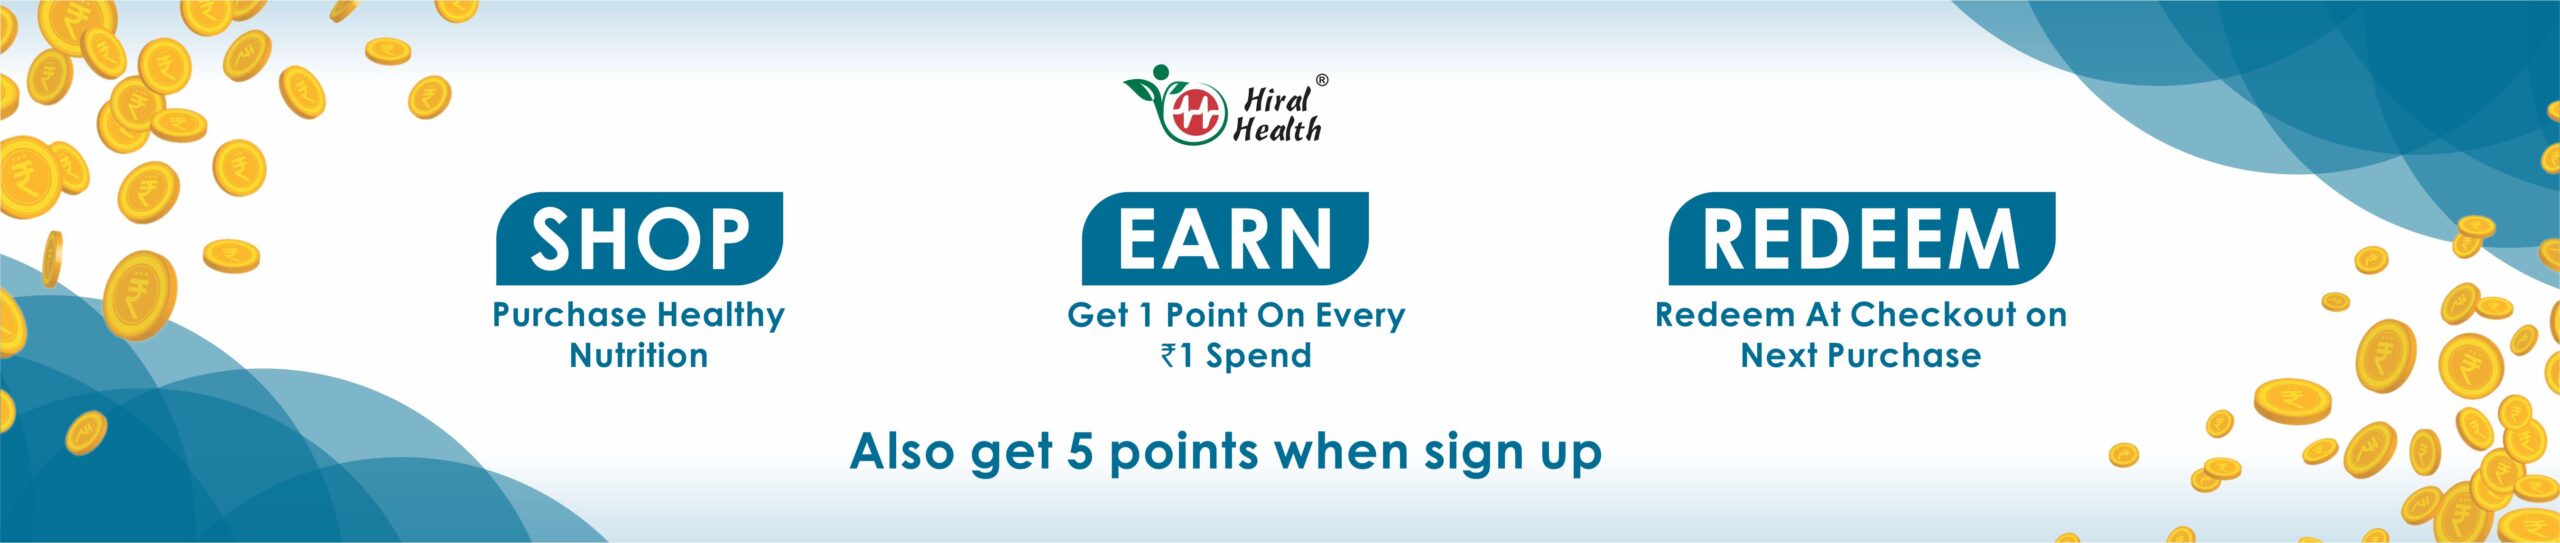 hiral health reward points